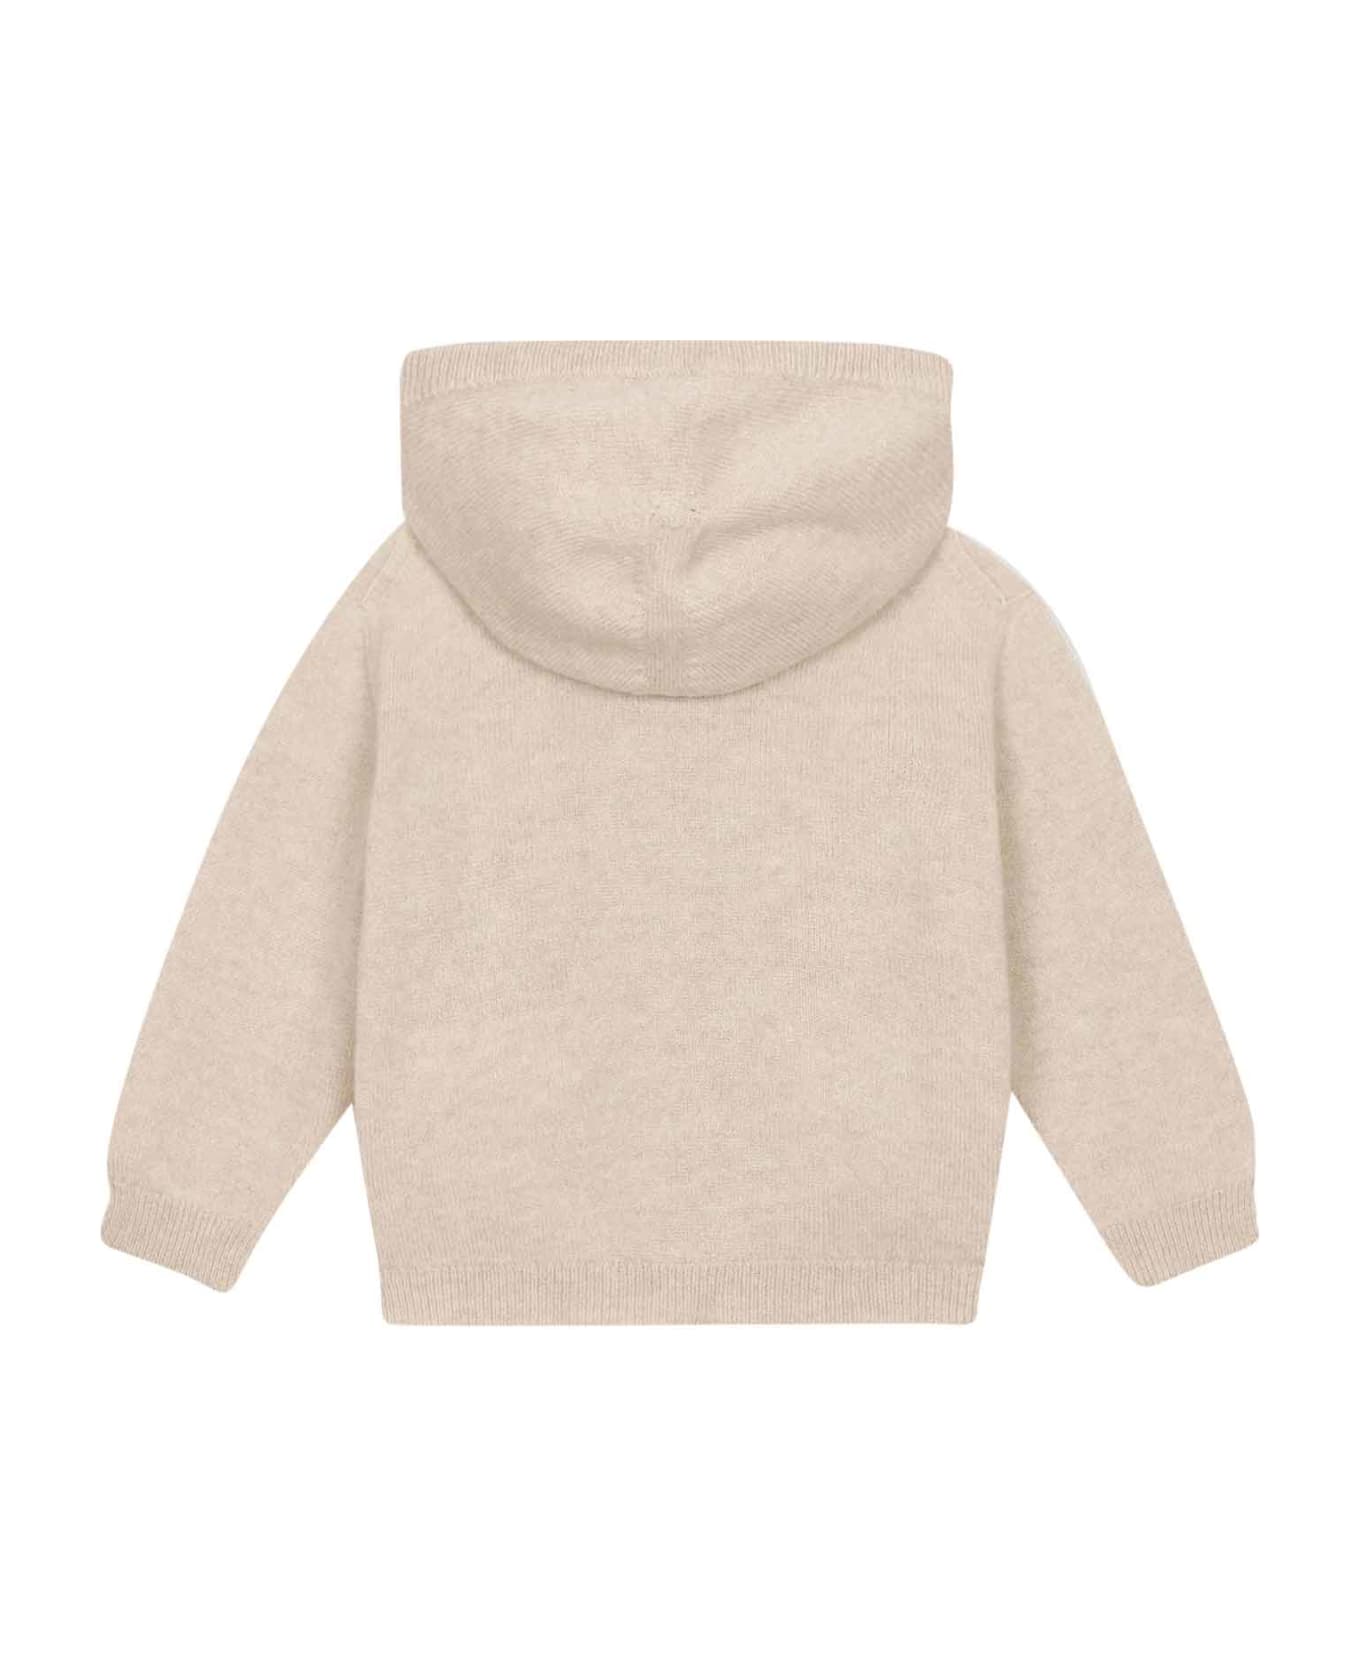 Dolce & Gabbana Beige Sweatshirt Baby Unisex - Beige